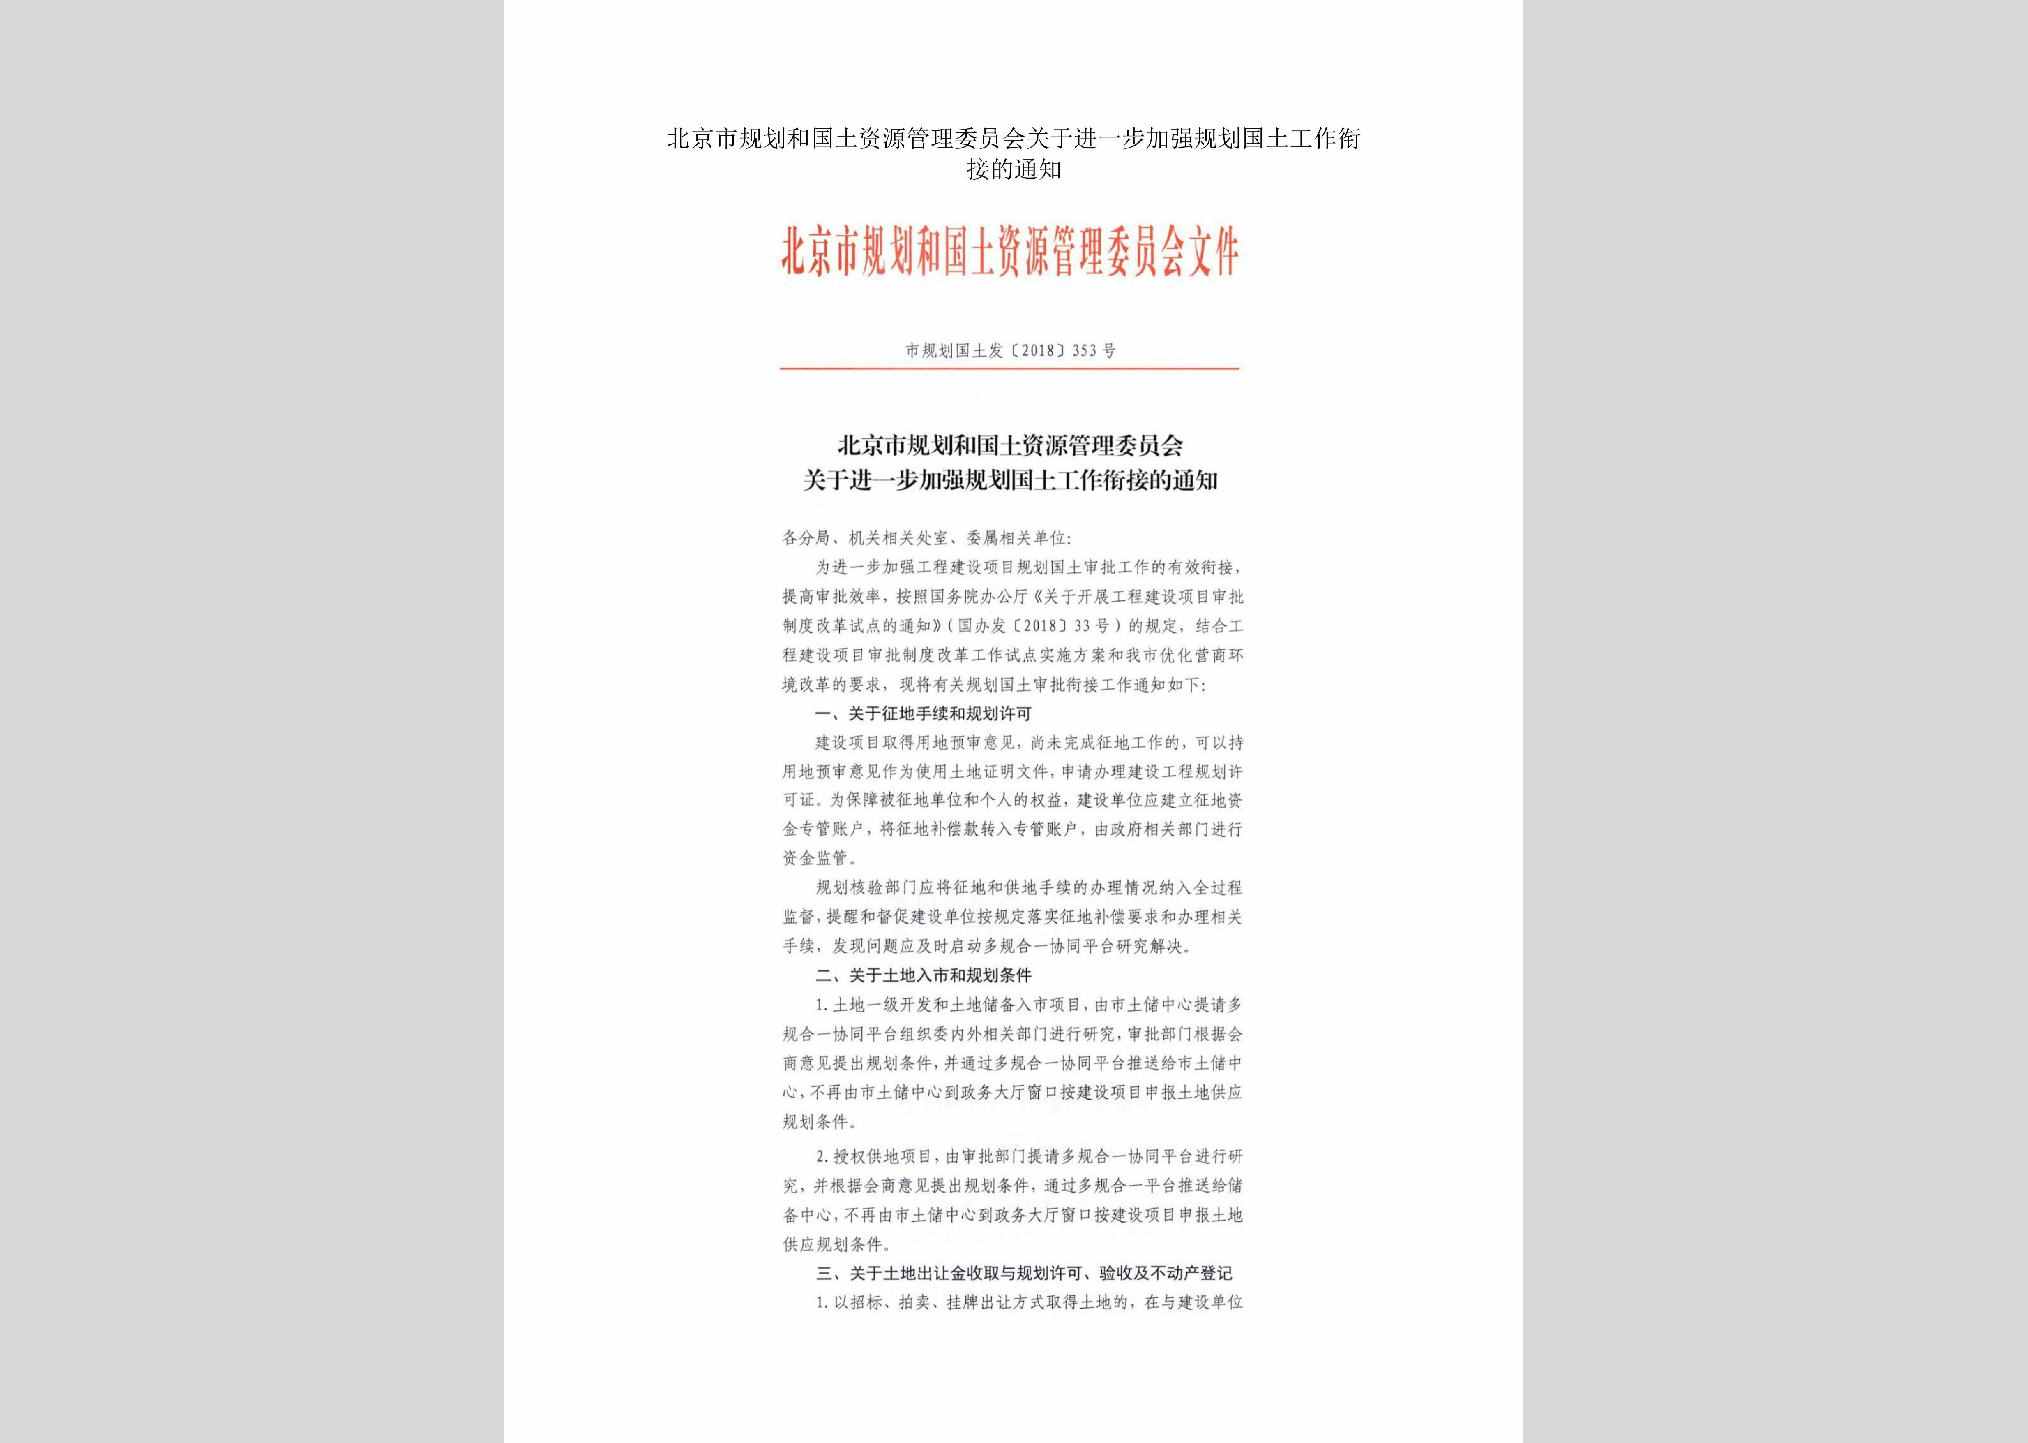 市规划国土发[2018]353号：北京市规划和国土资源管理委员会关于进一步加强规划国土工作衔接的通知